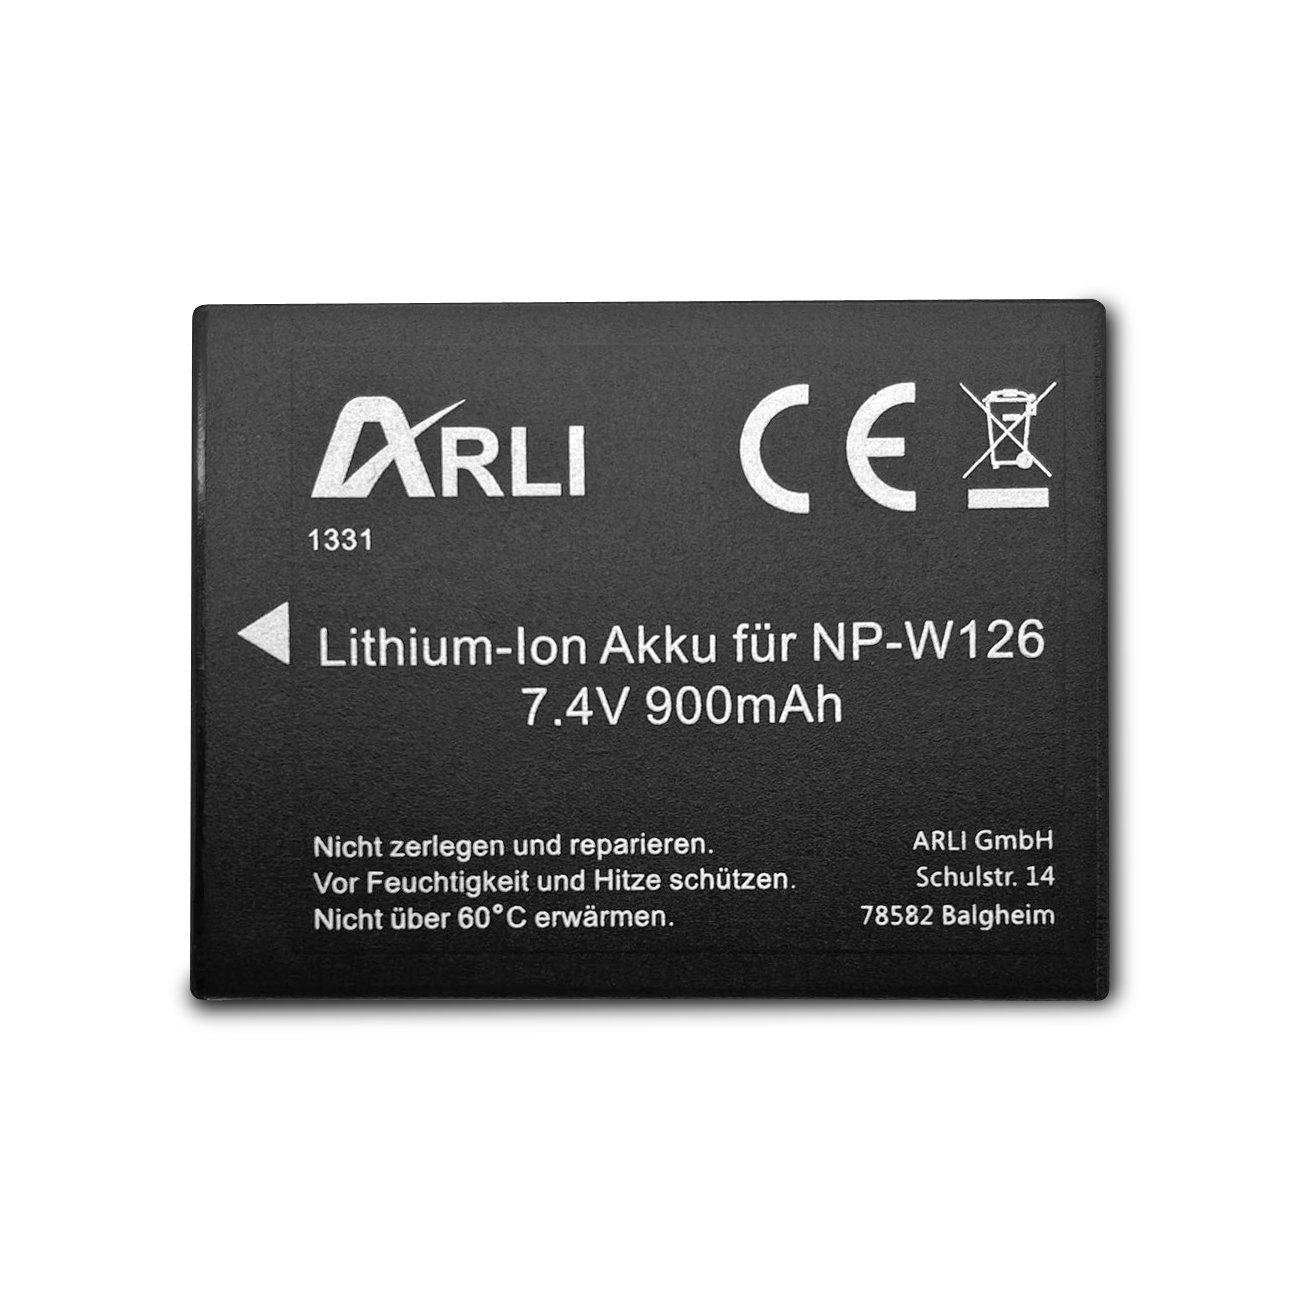 2x + Ersatzakku NP-W126S Akku, Dual kompatibel Smart ARLI 100% für Fuji Ladegerät NPW-126 LCD Akku USB passend